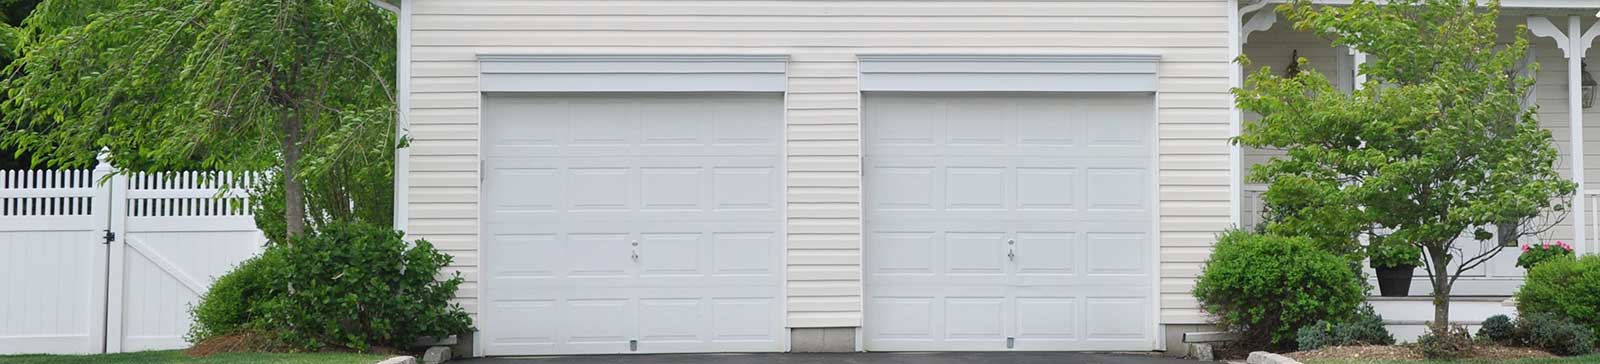 Affordable Garage Door Repair Near Me - Charlotte NC